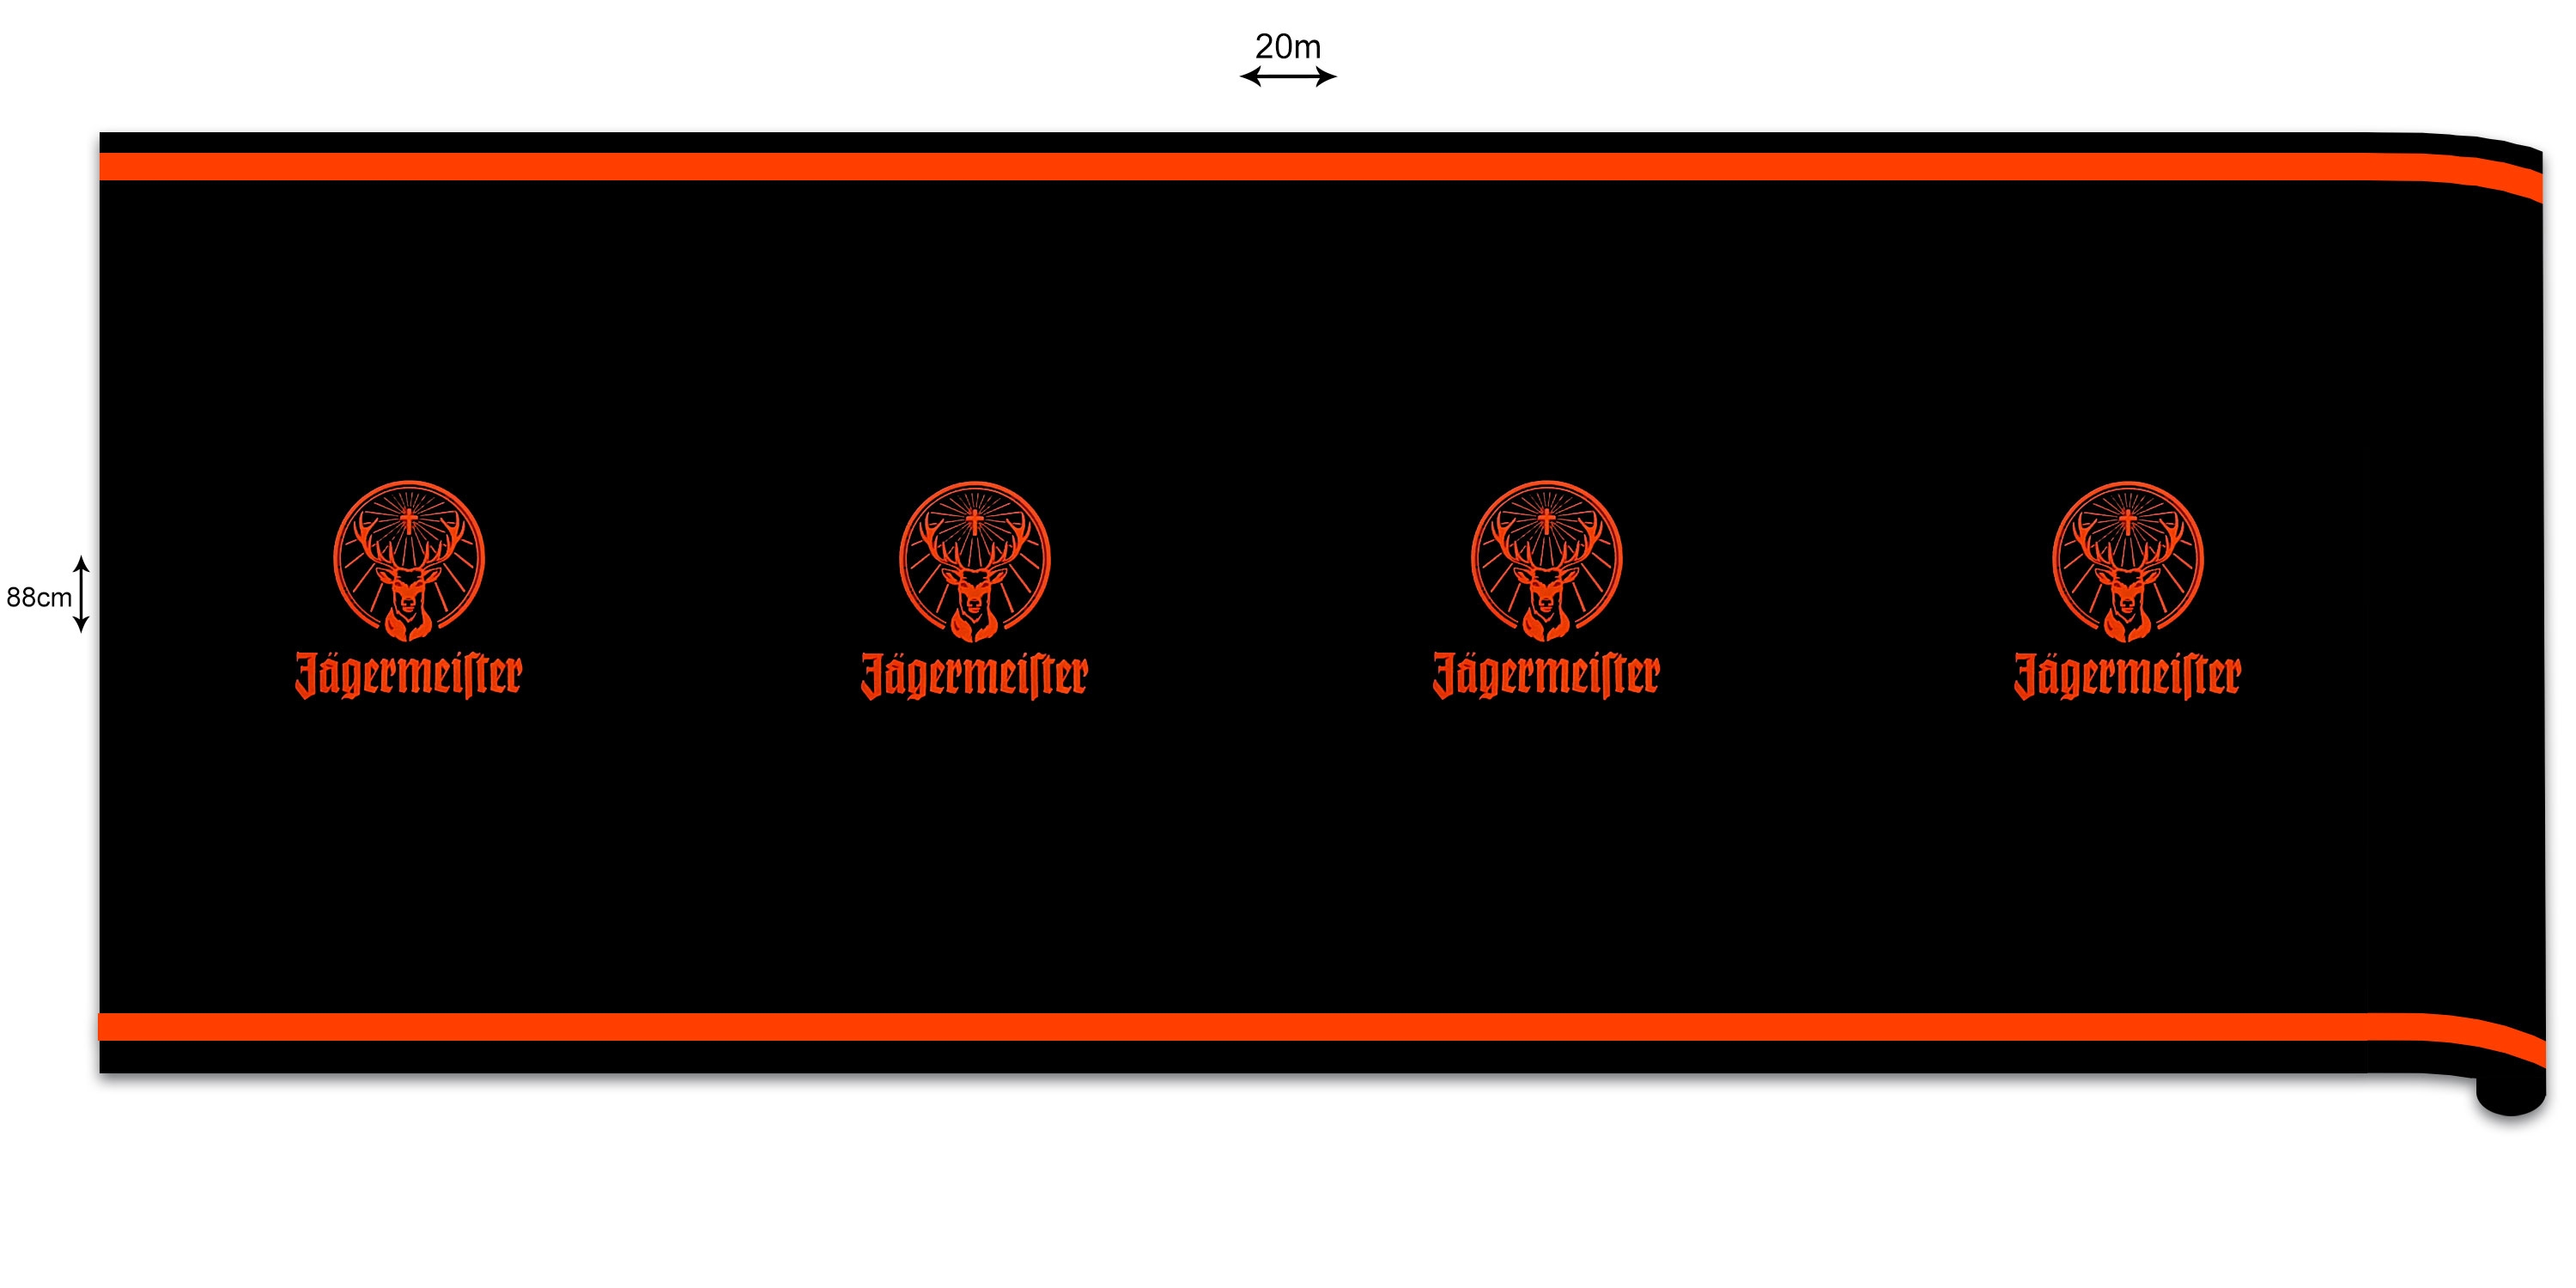 Jägermeister Dekofolie Folie Tischdecke mit Jägermeister Logo schwarz orange - 1x Rolle 88cm x 20m